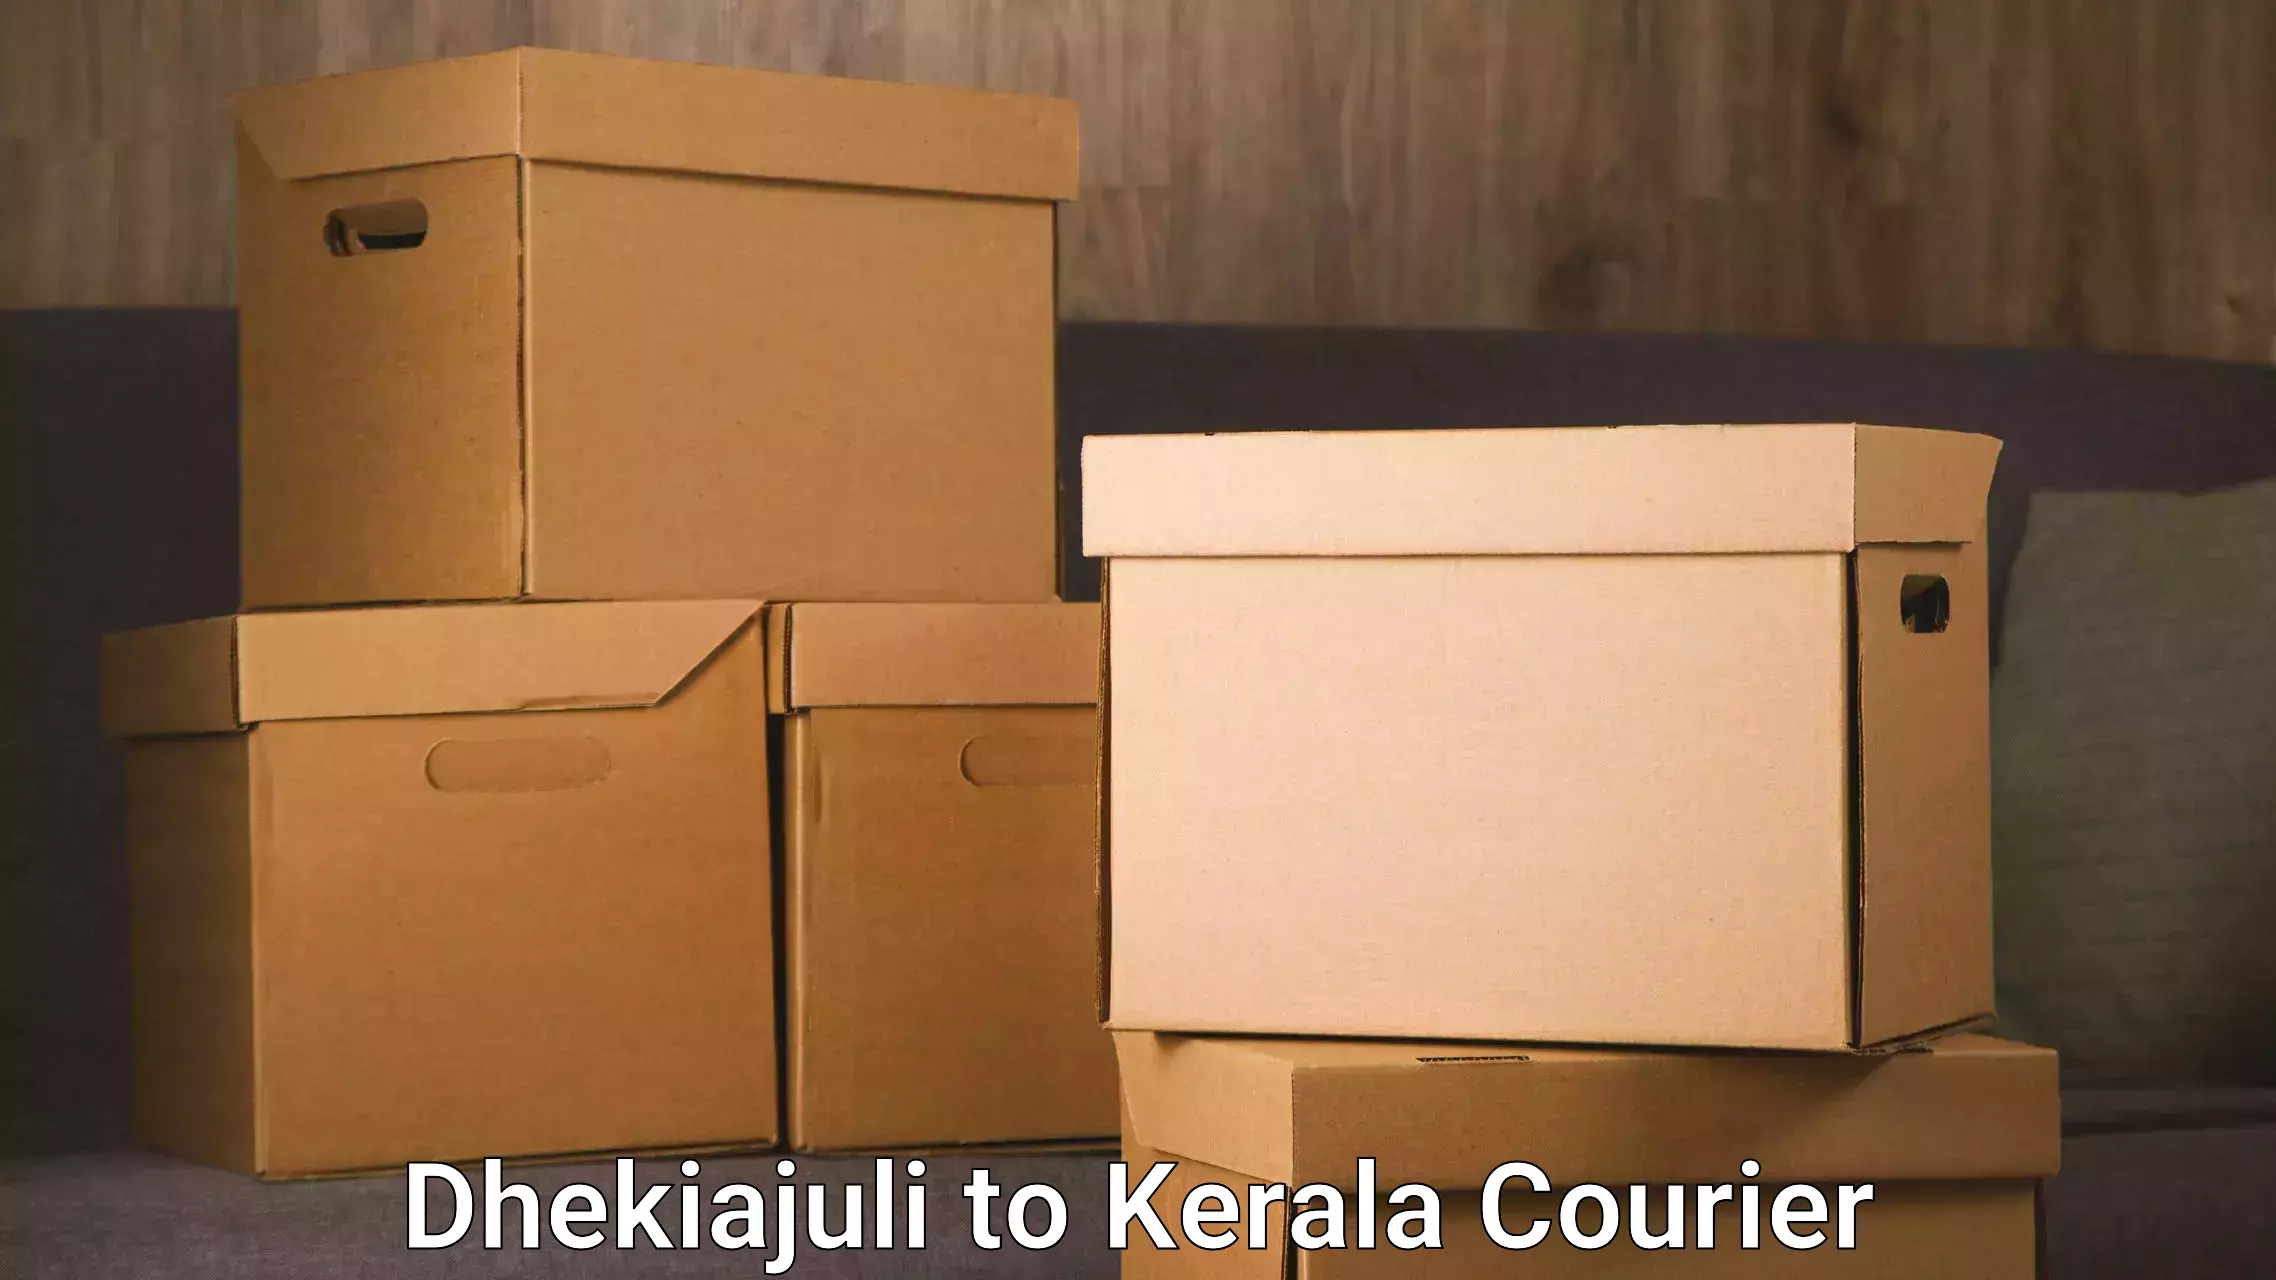 International courier networks in Dhekiajuli to IIIT Kottayam